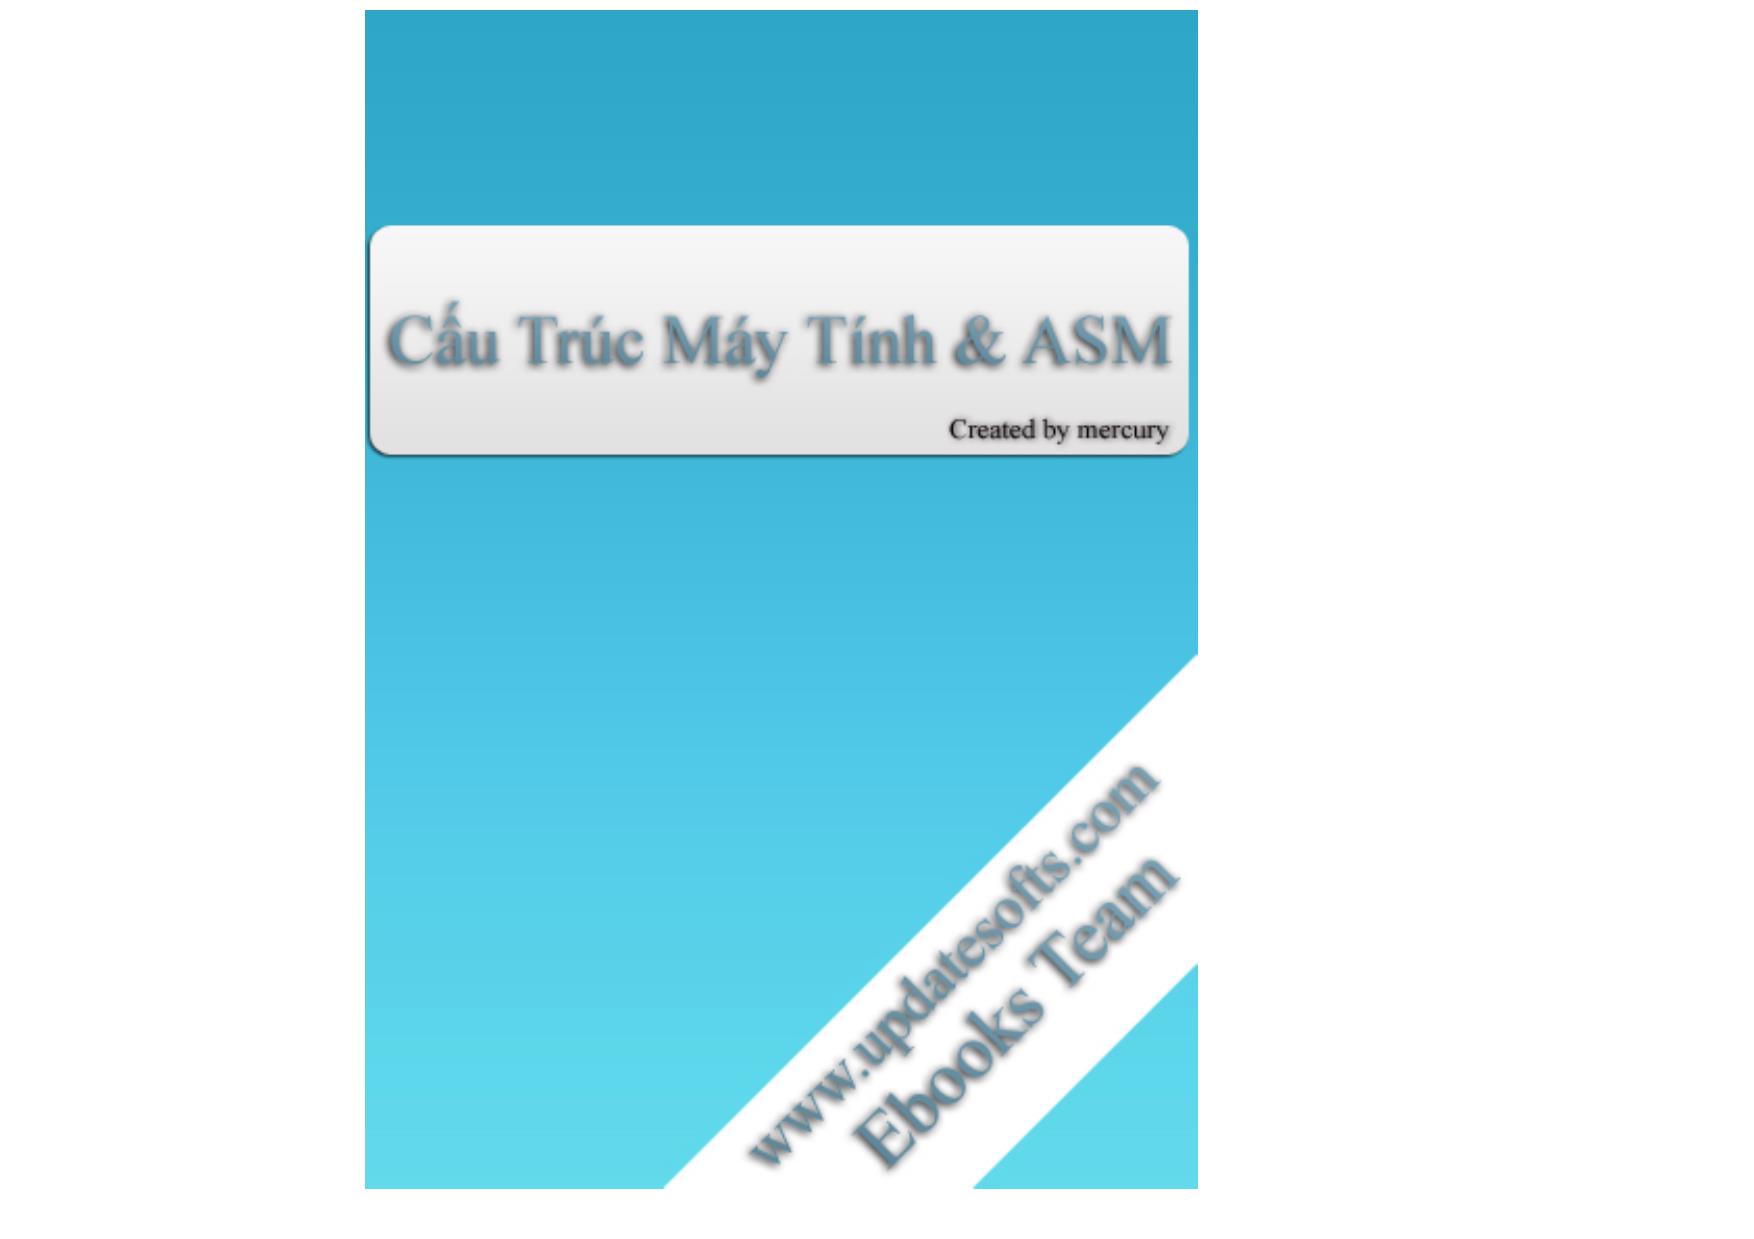 Cấu trúc máy tính và ASM trang 1